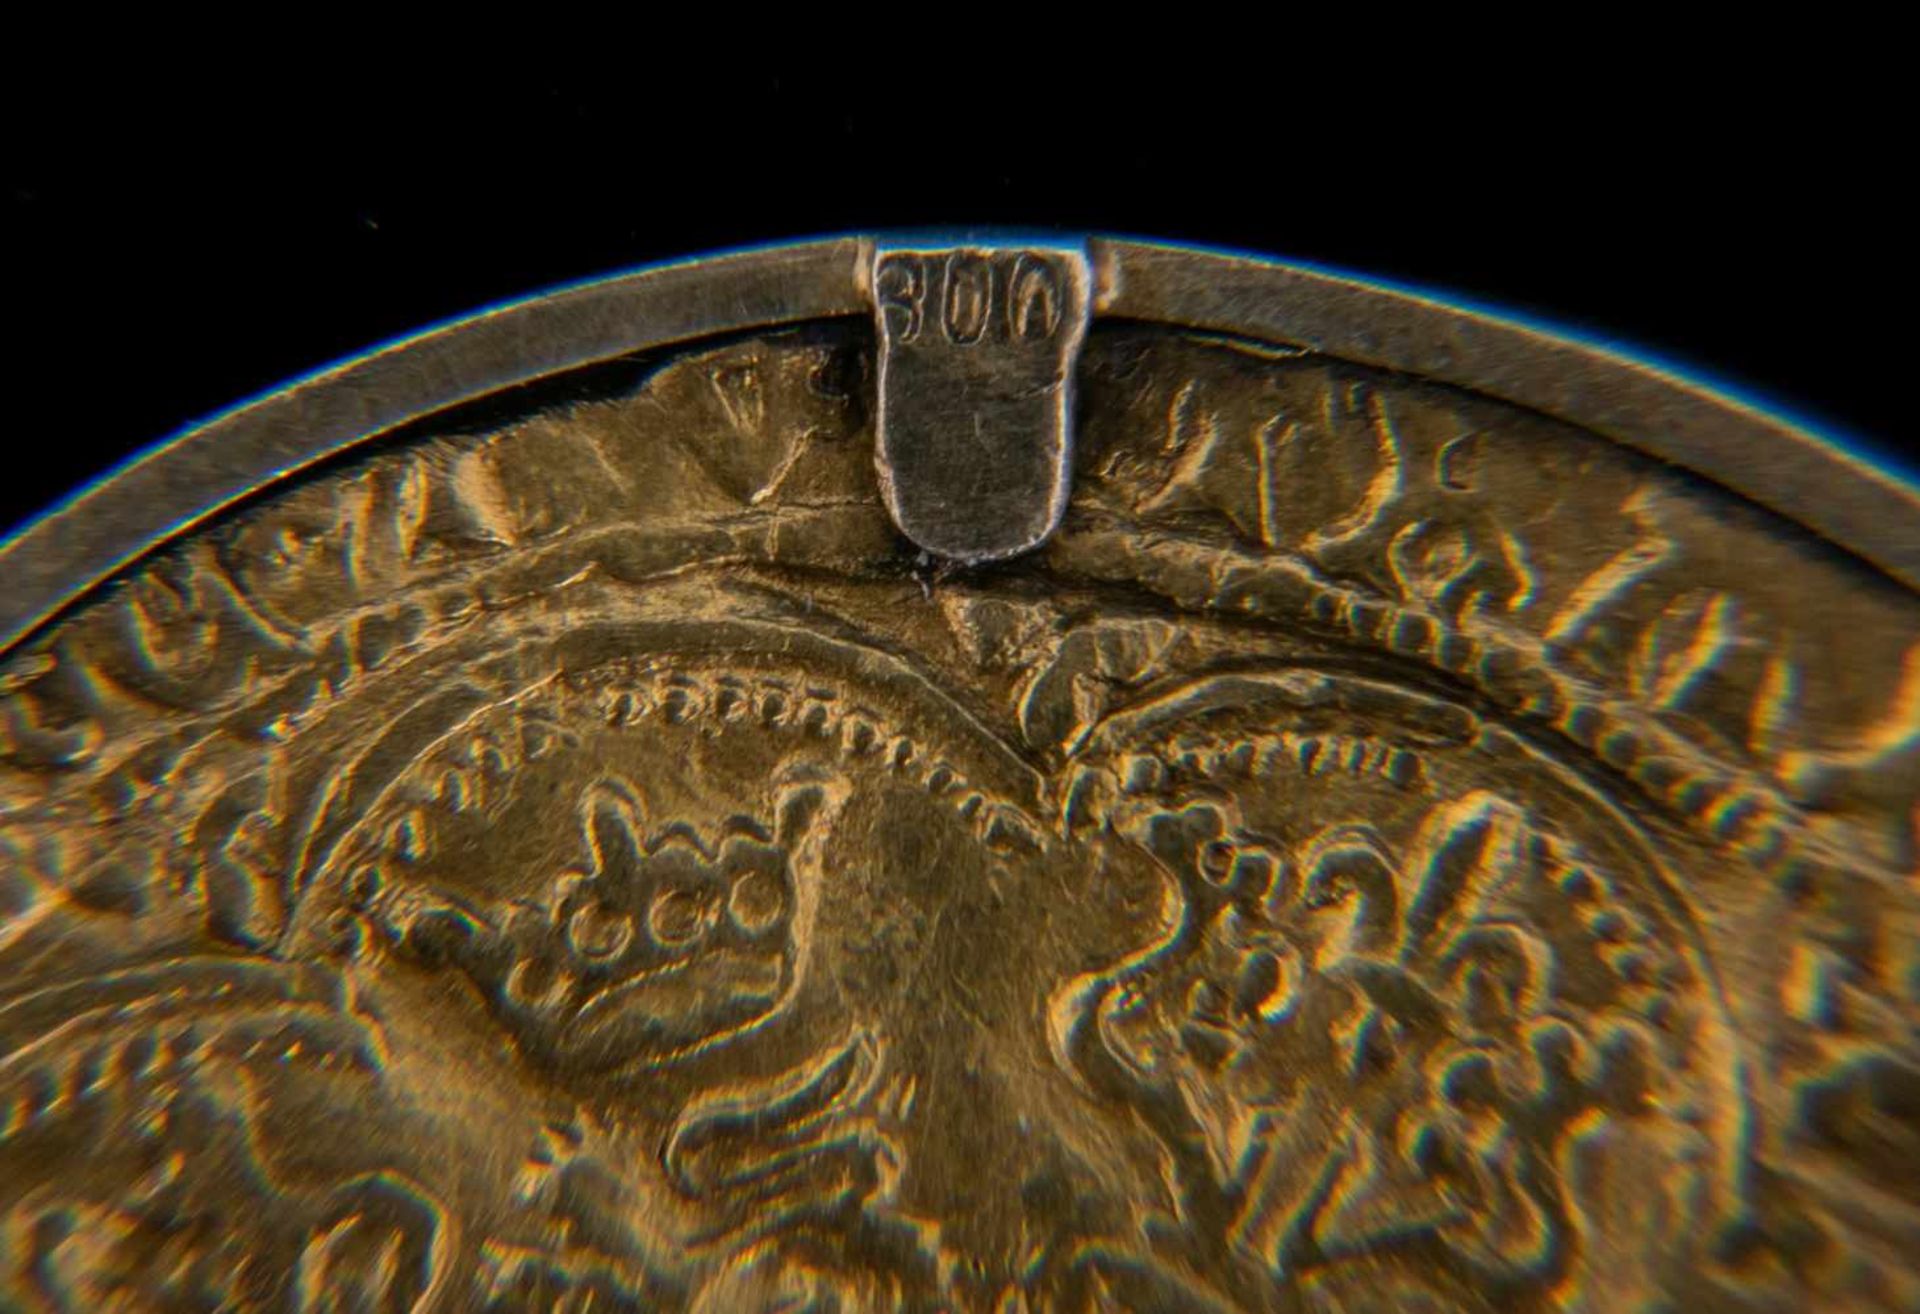 GOLD RYAL / ROSE NOBLE - Goldmünze. England 15. - 17. Jhd., vorderseitig König mit Schwert, Schild & - Bild 11 aus 15